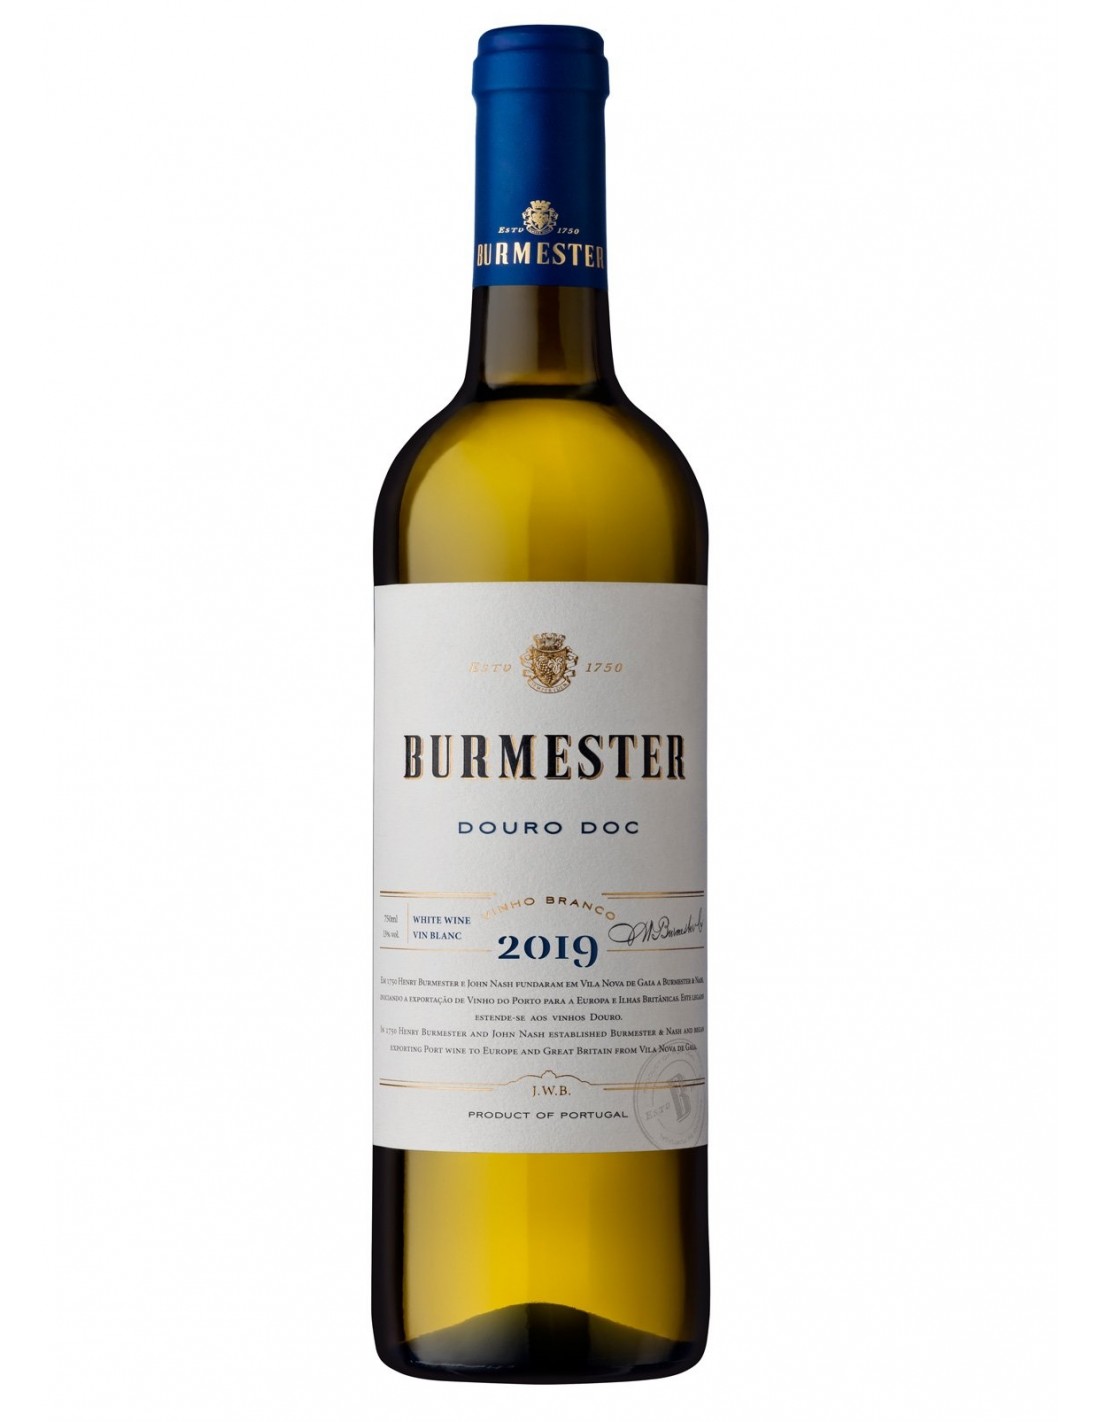 Vin alb sec, Casa Burmester Douro, 13% alc., 0.75L, Portugalia alcooldiscount.ro